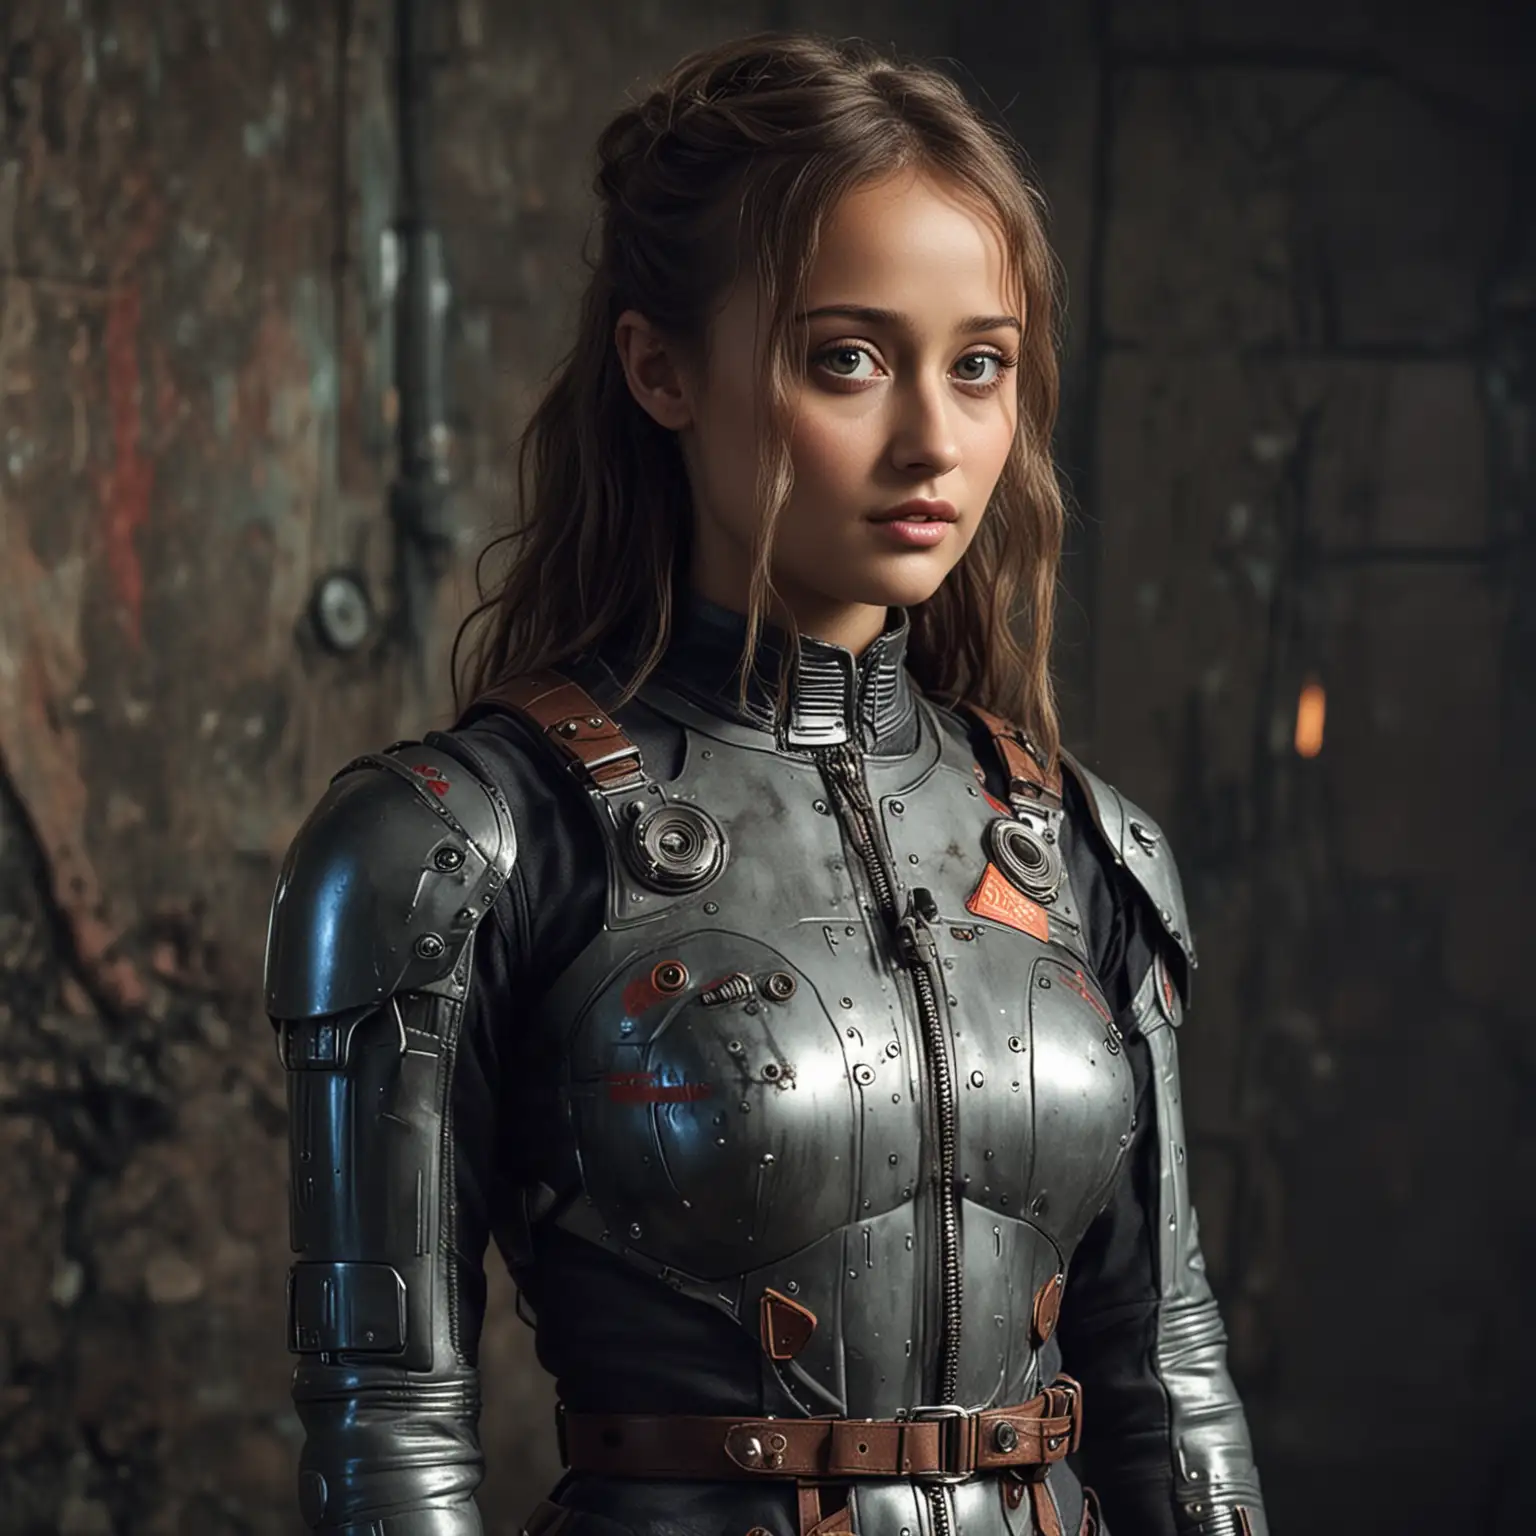 Ella Purnell in Futuristic SciFi Attire Portrayal from Fallout Video